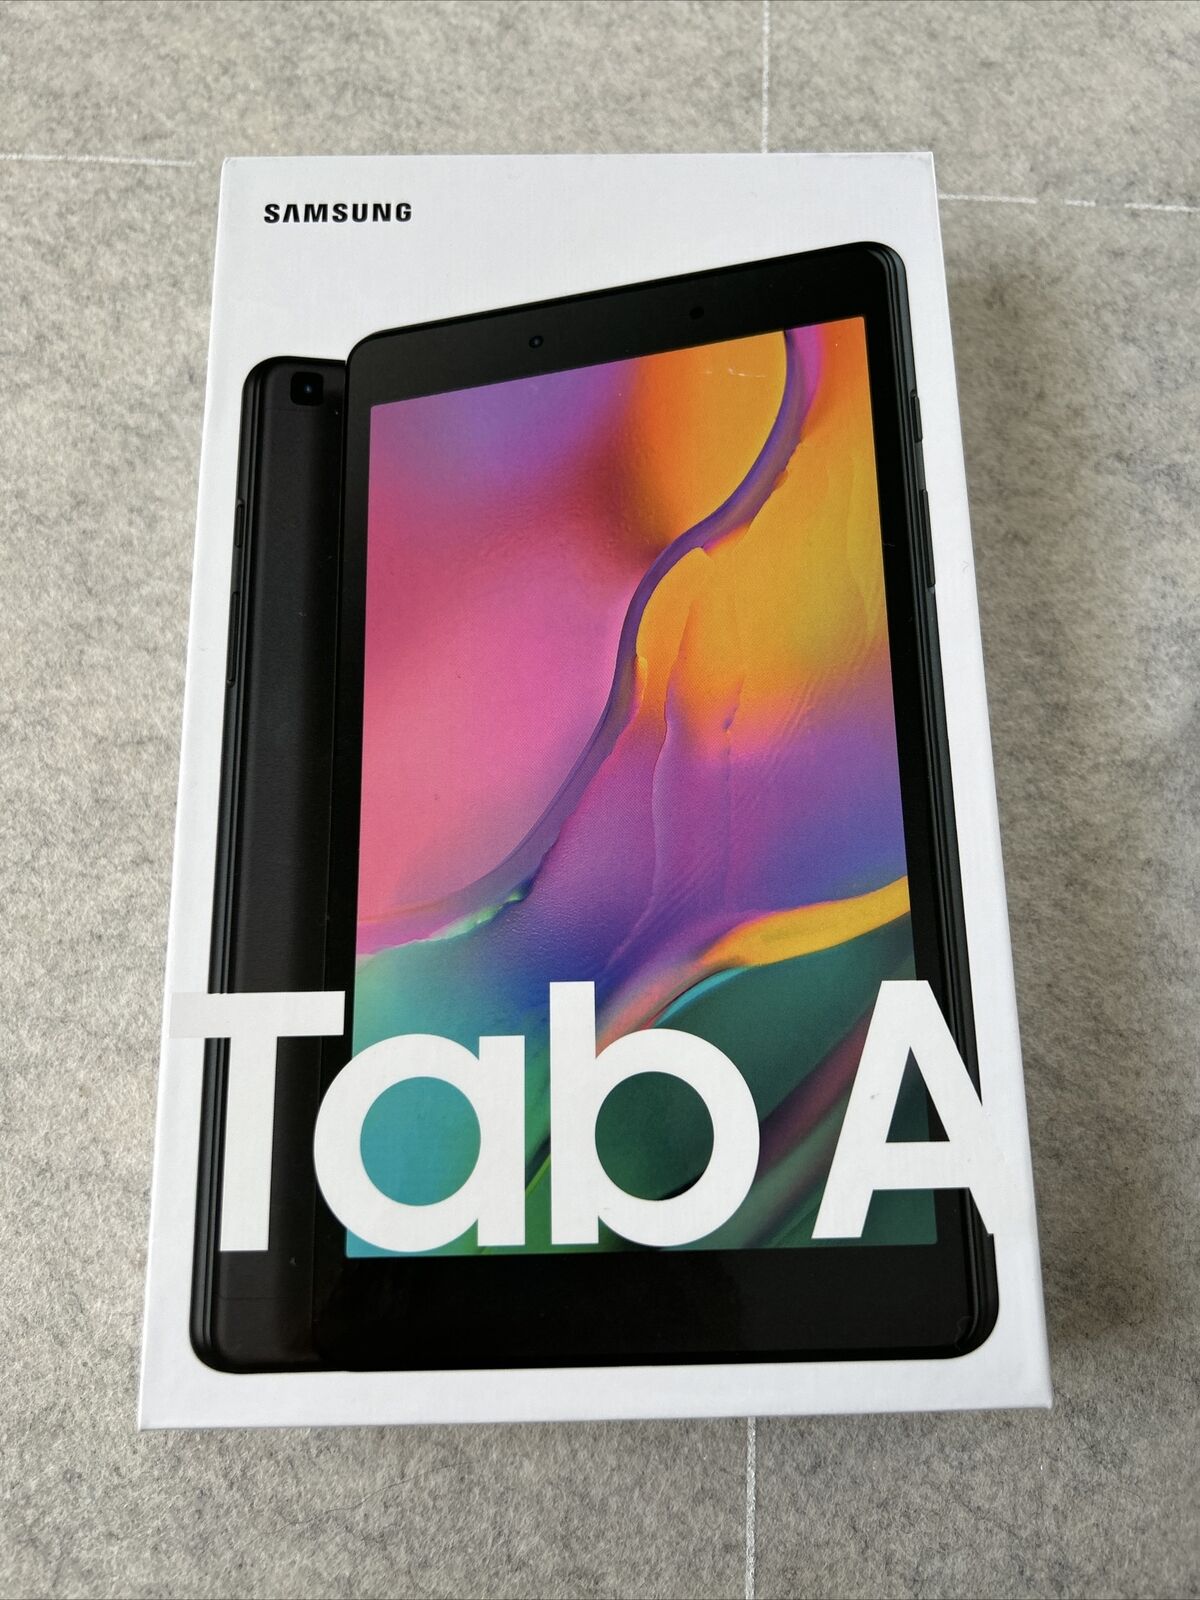 NEW Samsung Galaxy Tab A 32GB, Wi-Fi+ Cellular(Unlocked) 8 inch Tablet -Black